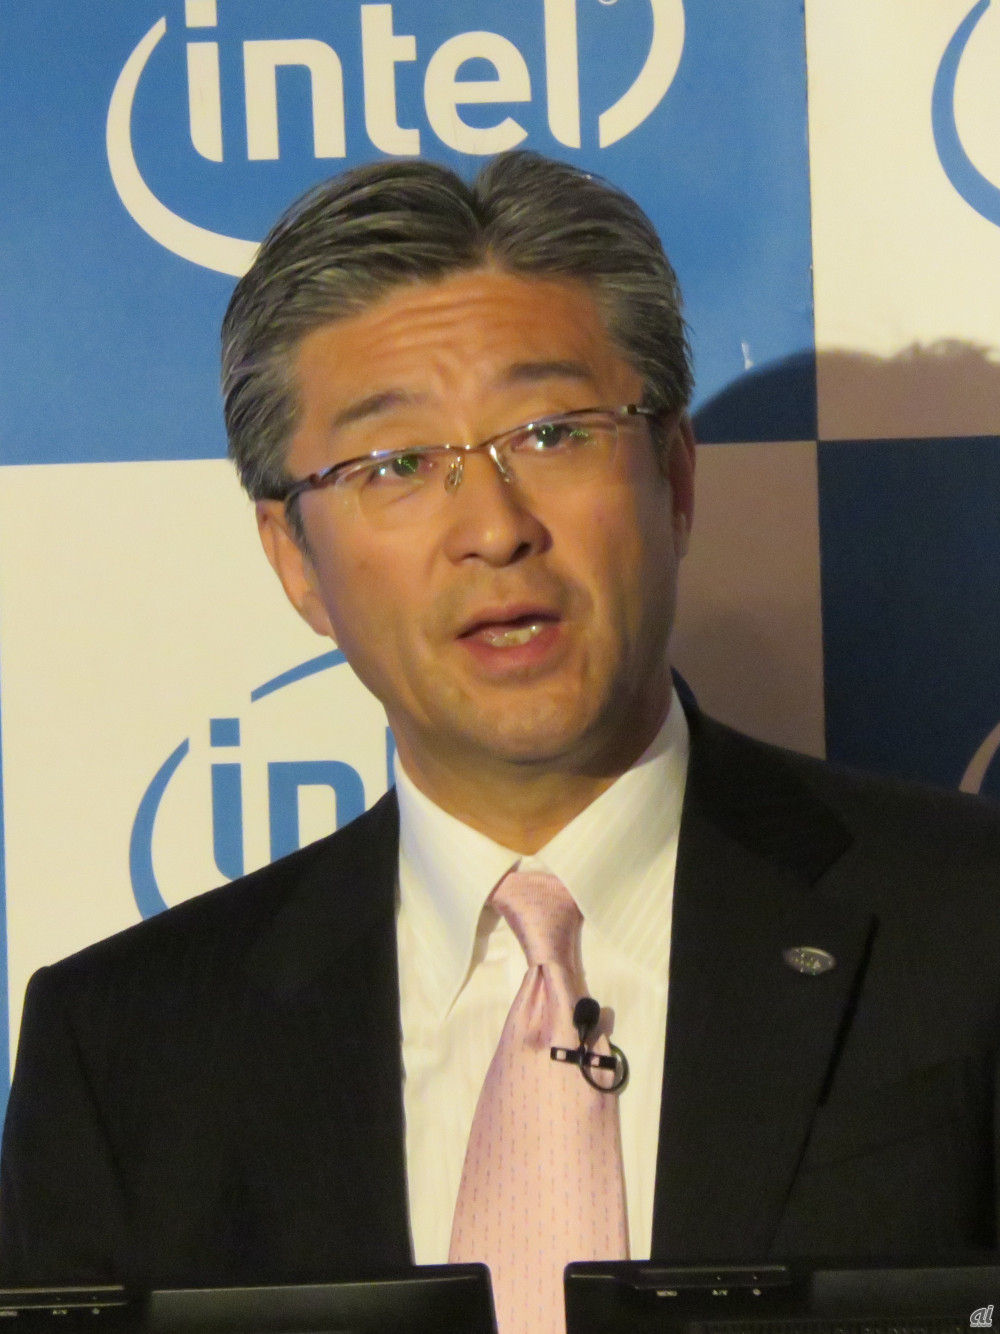 インテル社長が語る 顧客企業のトップが示したデジタル時代への危機感 Zdnet Japan